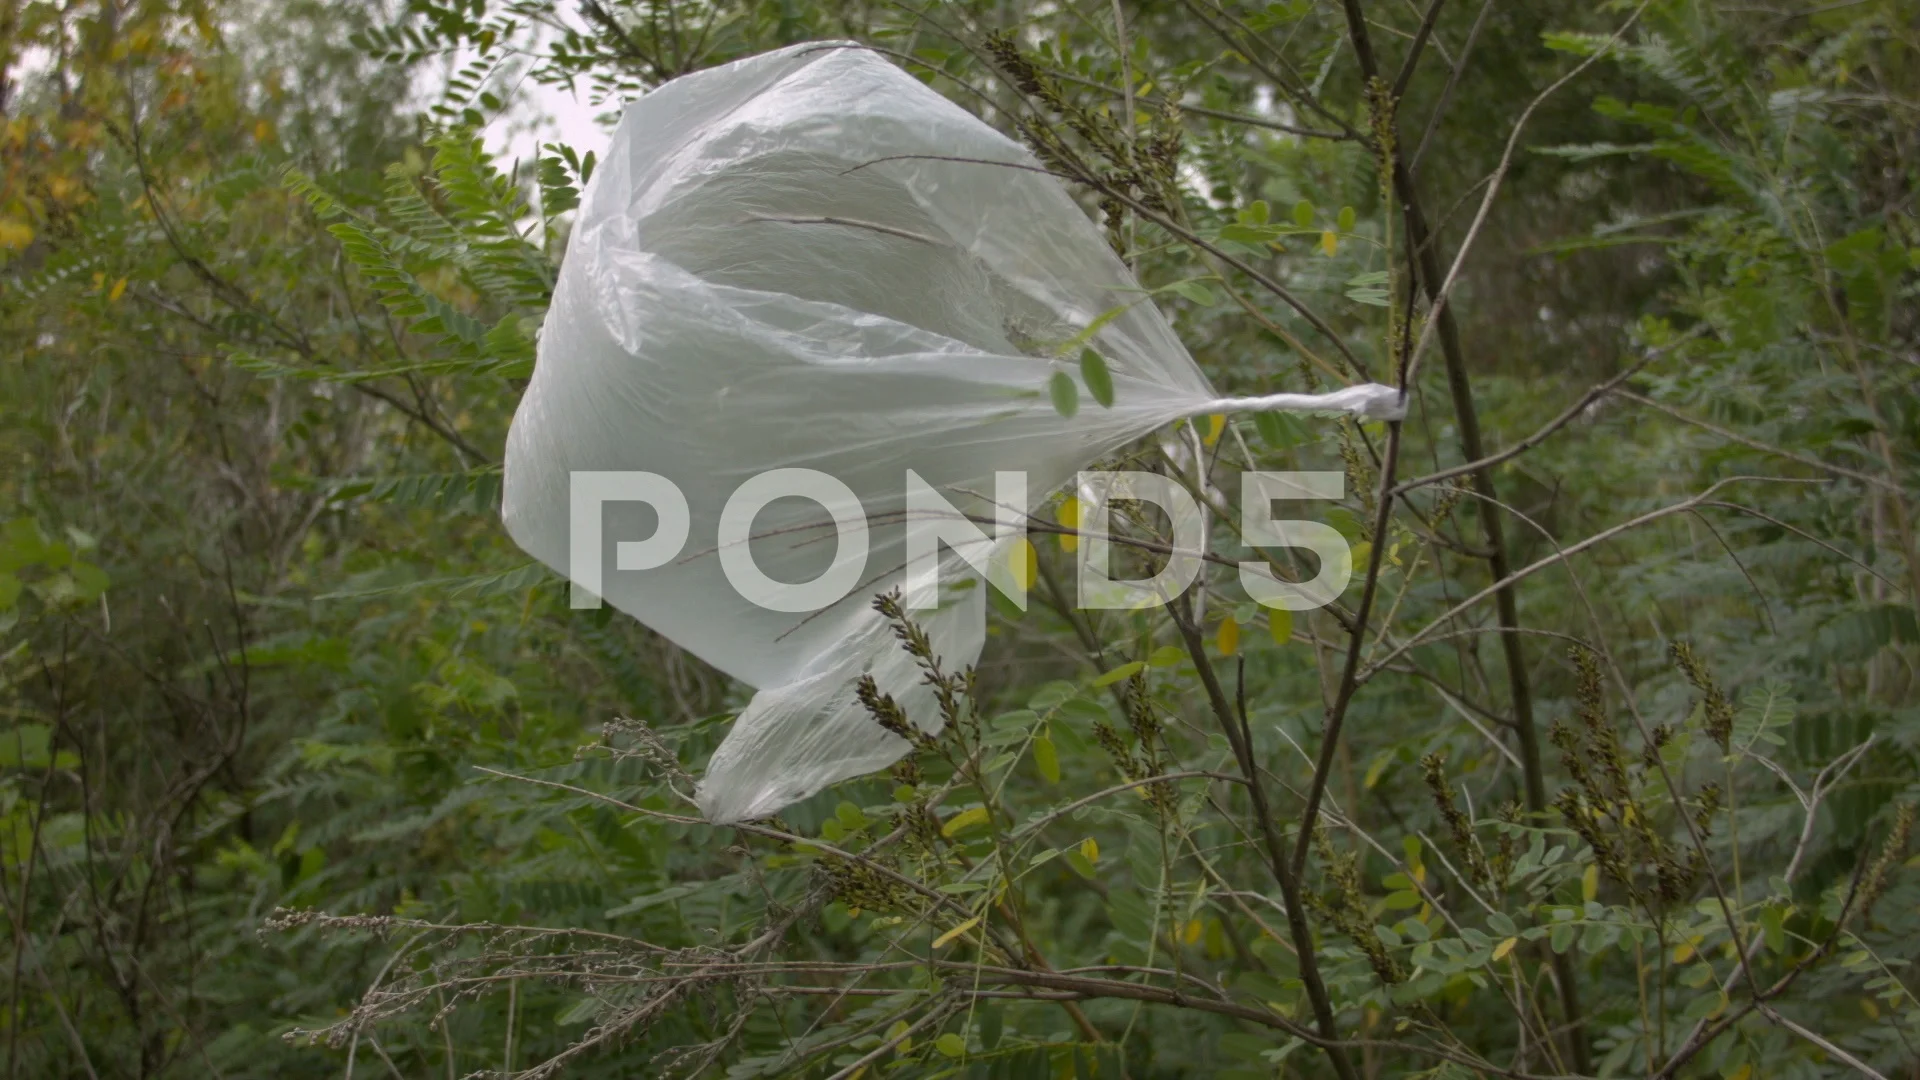 https://images.pond5.com/trash-plastic-bag-wind-tree-footage-114732400_prevstill.jpeg